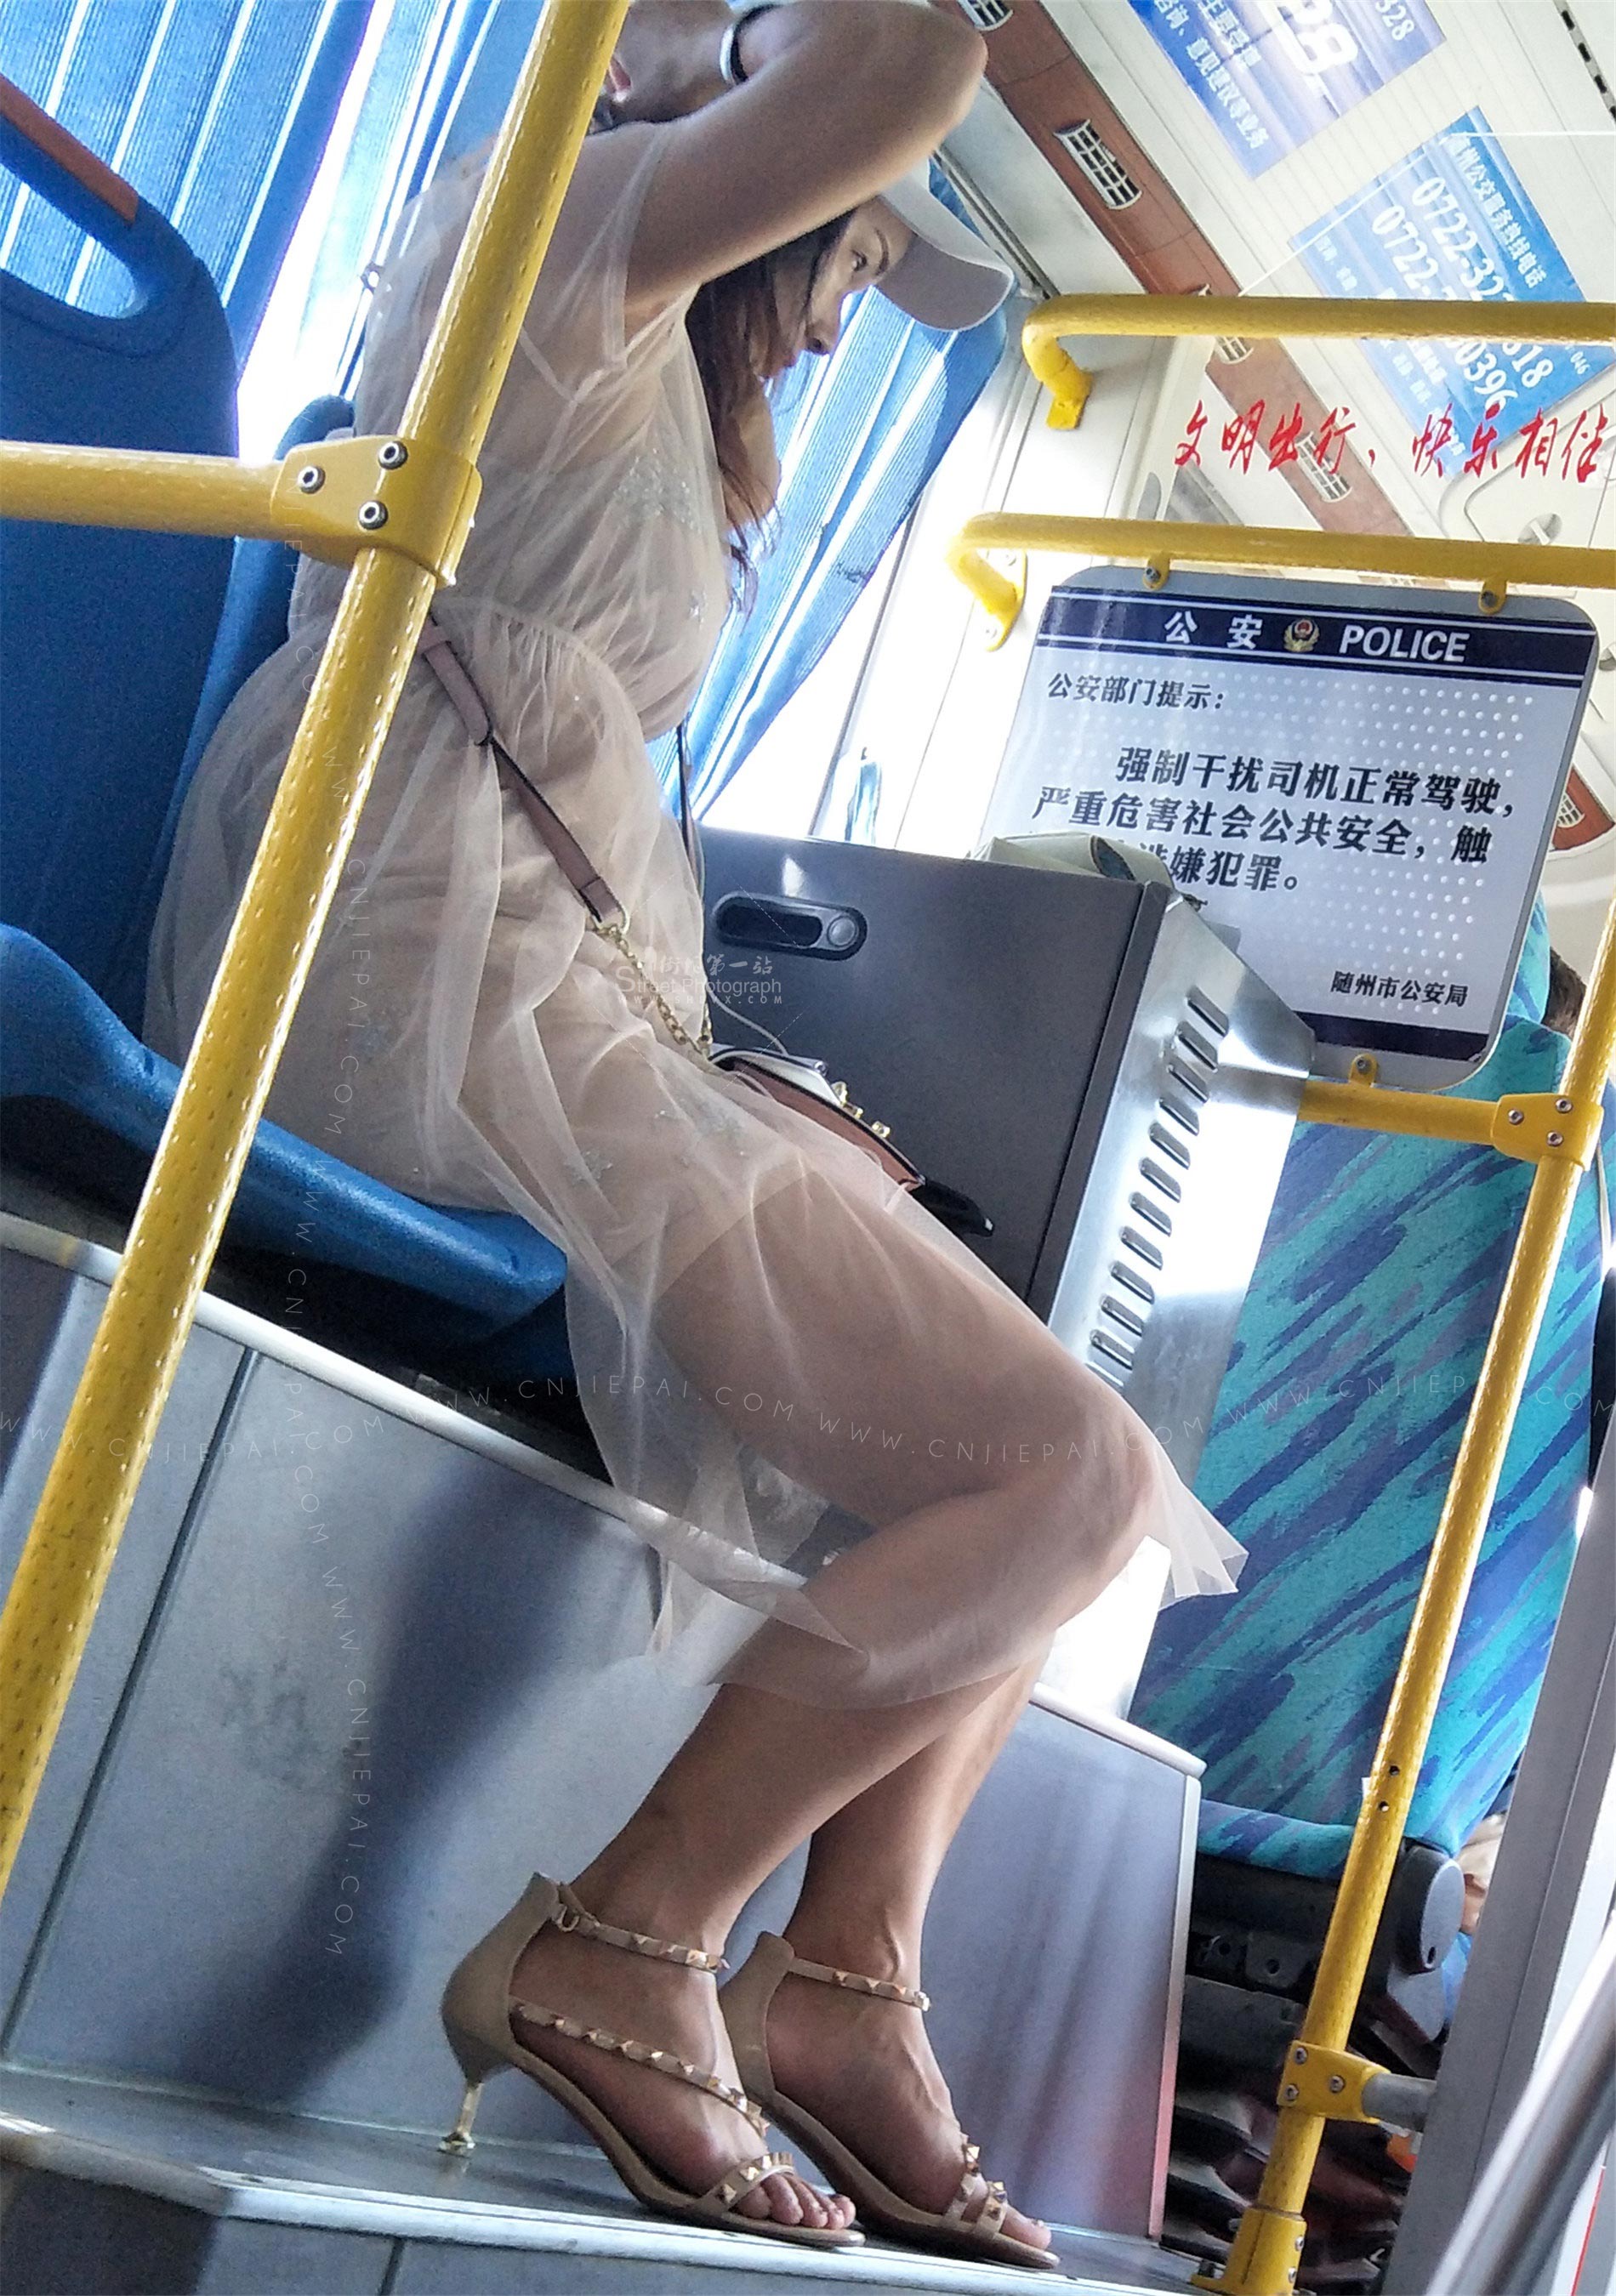 跟拍公交车上的纱裙少妇 图1